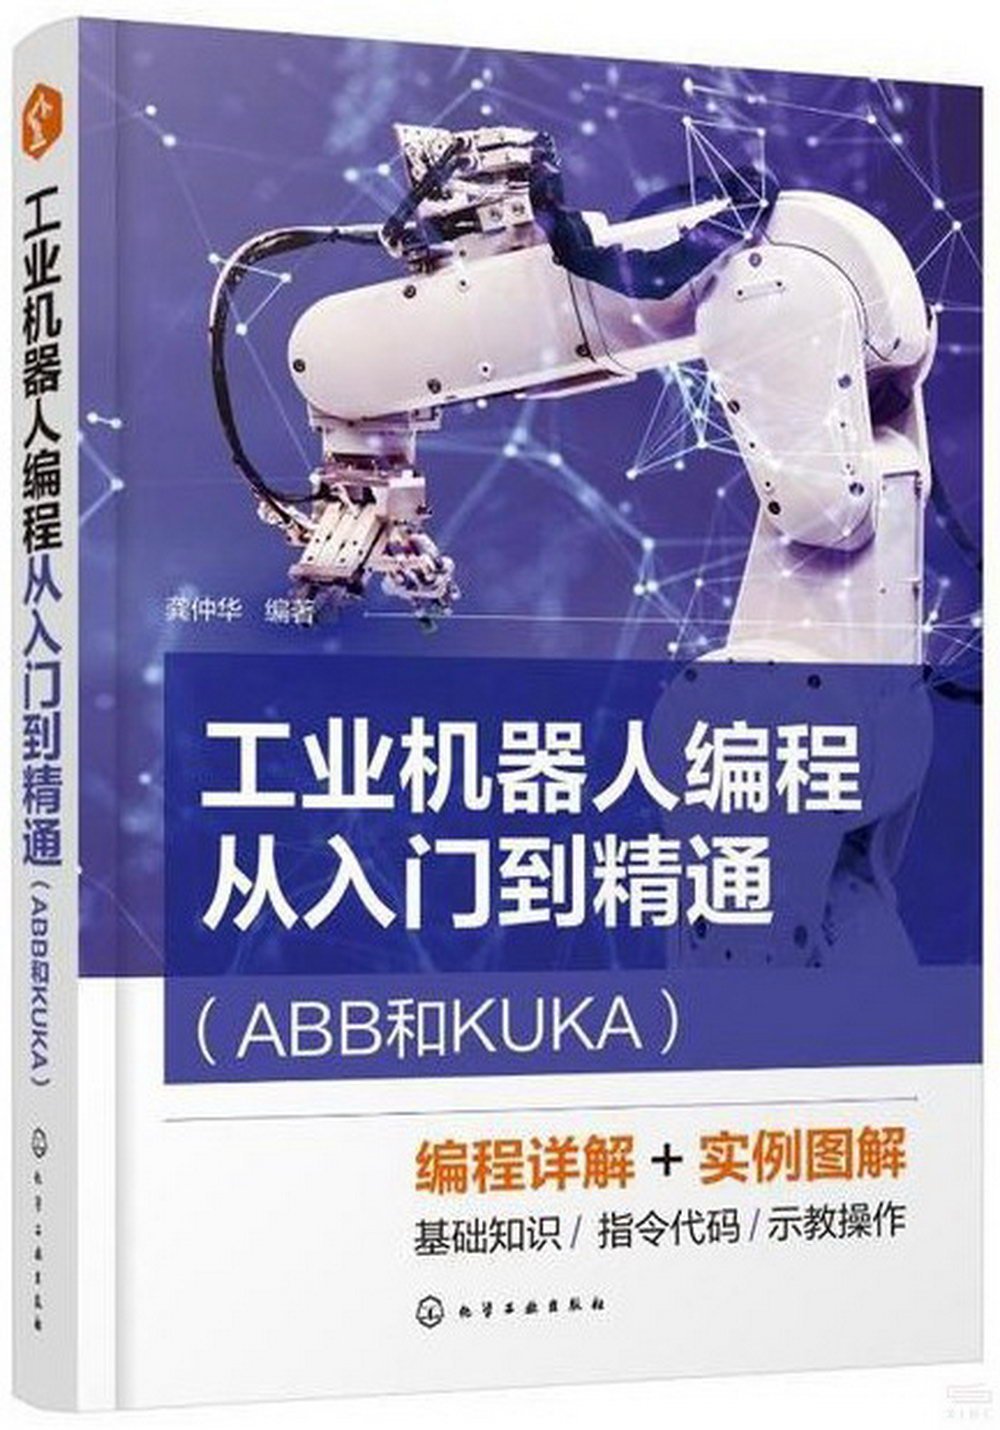 工業機器人編程從入門到精通(ABB和KUKA)